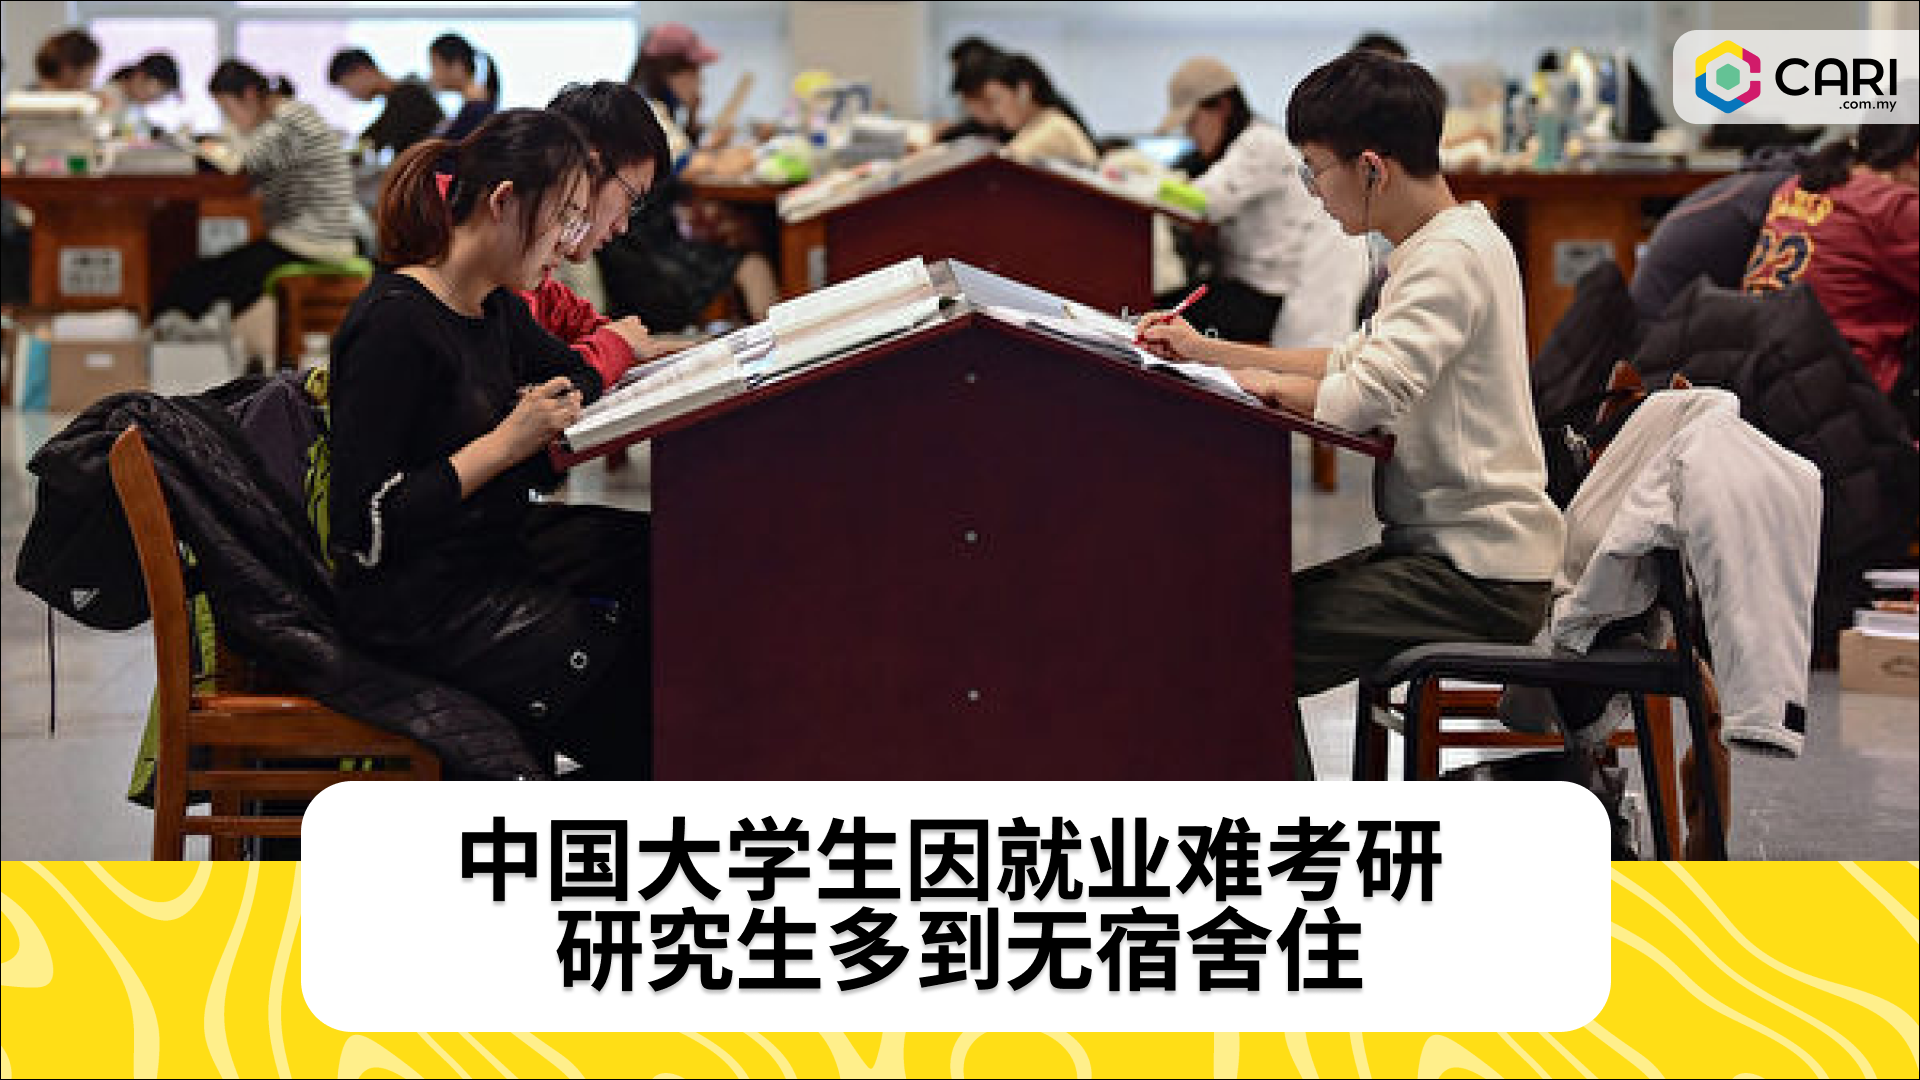 中国大学生因就业难考研 研究生多到无宿舍住